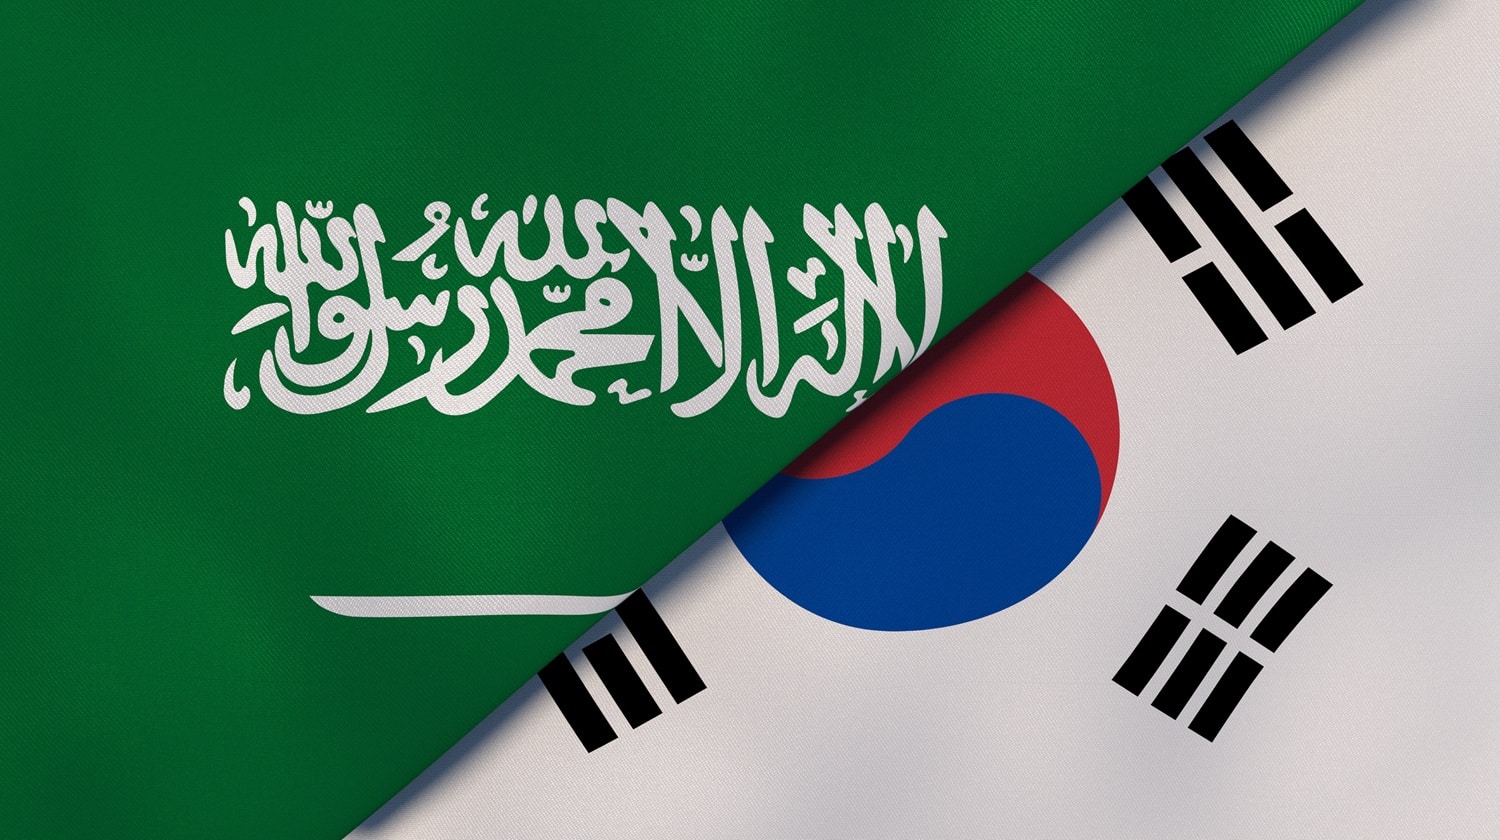 The flags of Saudi Arabia and South Korea.